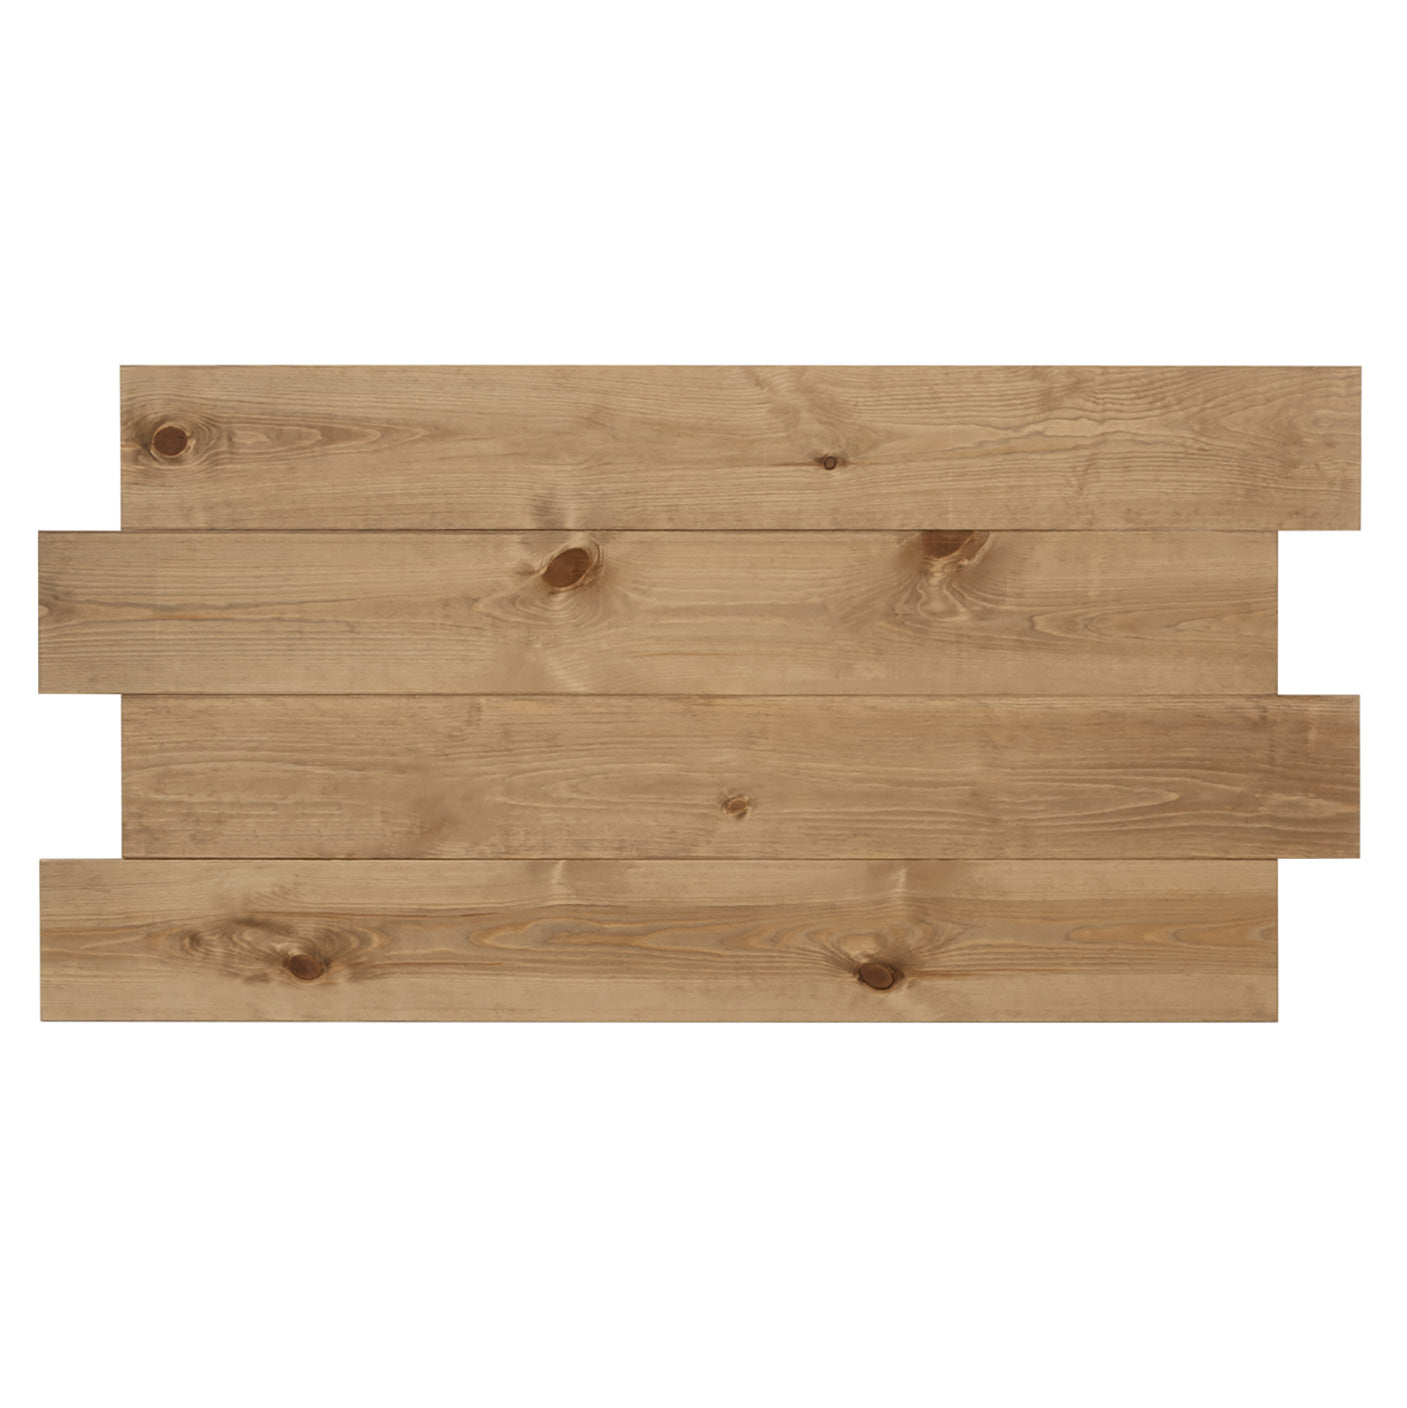 Cabecero de madera maciza en tono roble oscuro de 80x60cm - DECOWOOD